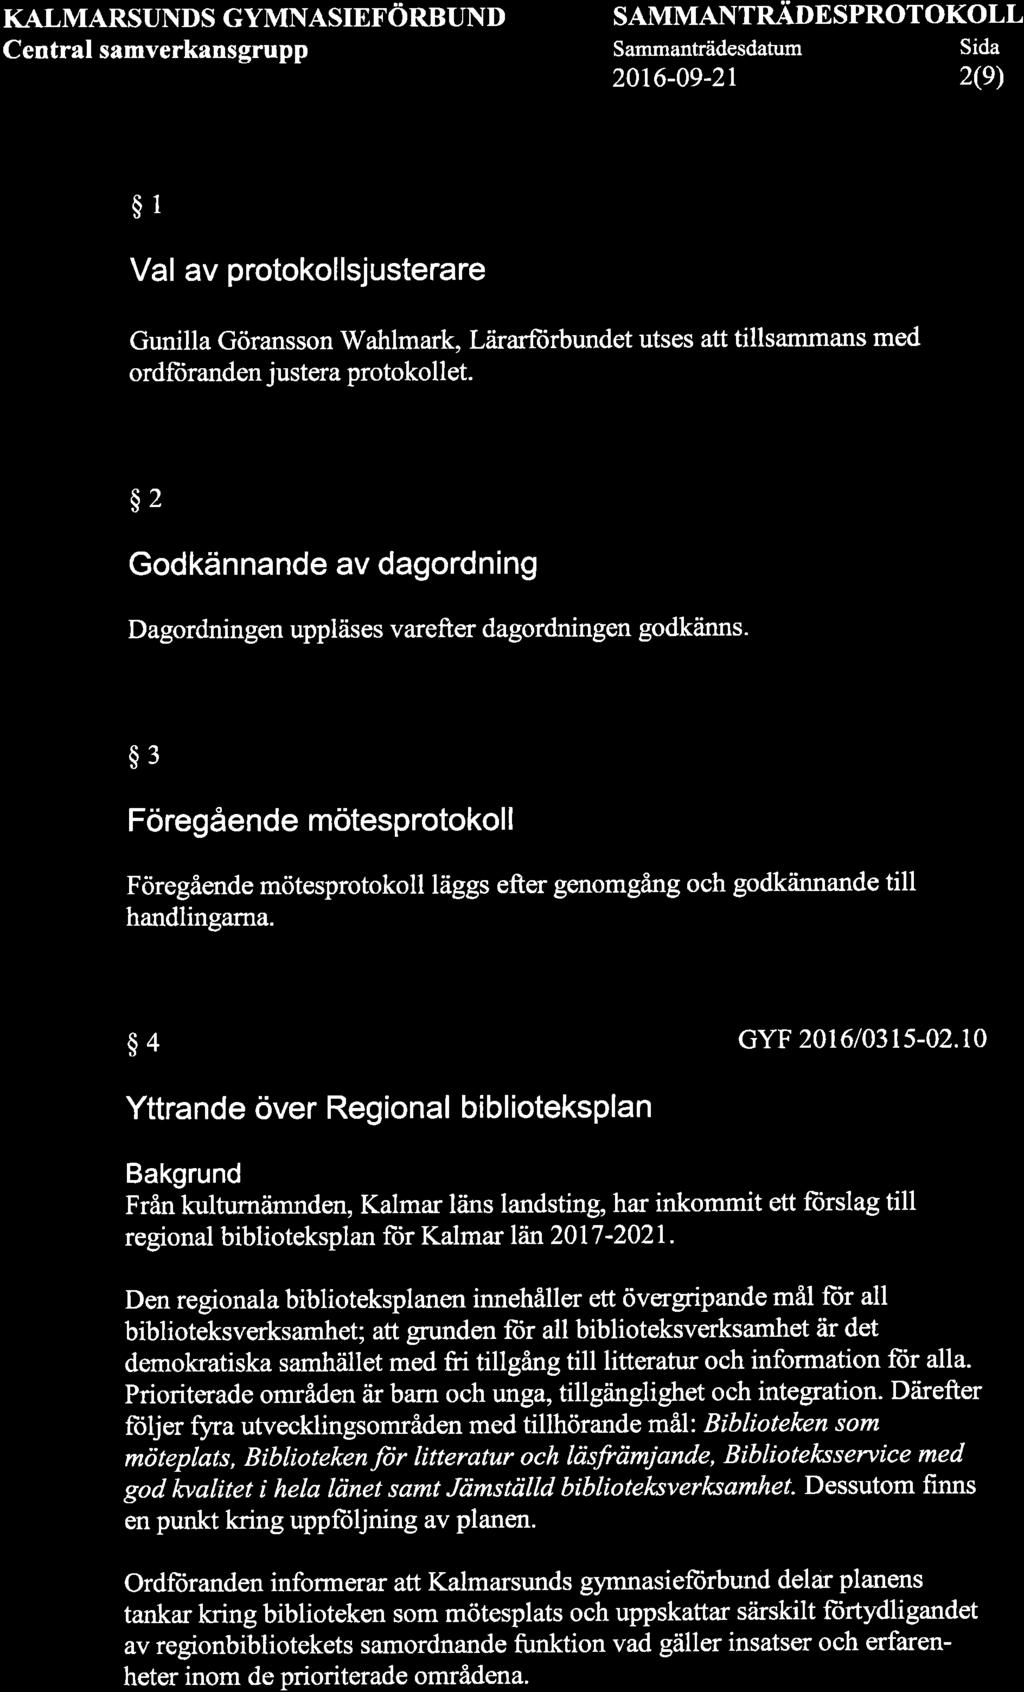 KALMARSUNDS GYMNASIEFORBUND Central samverkansgrupp SAMMANTRÄDE SPROT OKOLL Sammanträdesdatum Sida 2016-0e-2r 2(9) $1 Val av protokollsjusterare Gunilla Göransson Wahlmark, LåirarfÌirbundet utses att